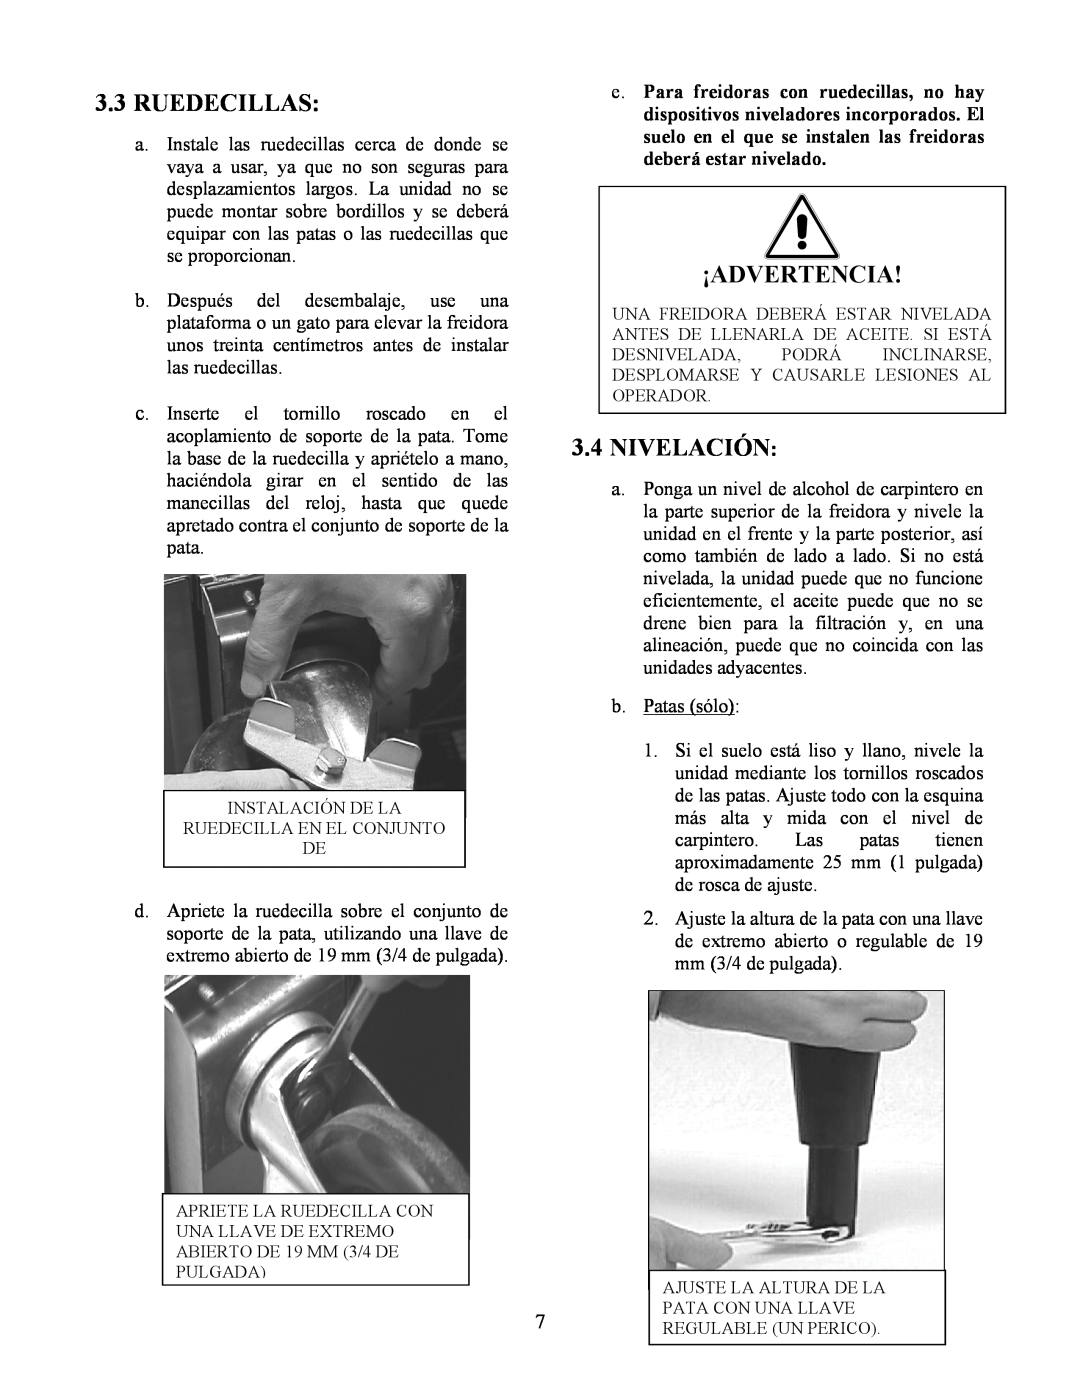 Frymaster Y SM80 manual 3.3RUEDECILLAS, 3.4NIVELACIÓN, ¡Advertencia 